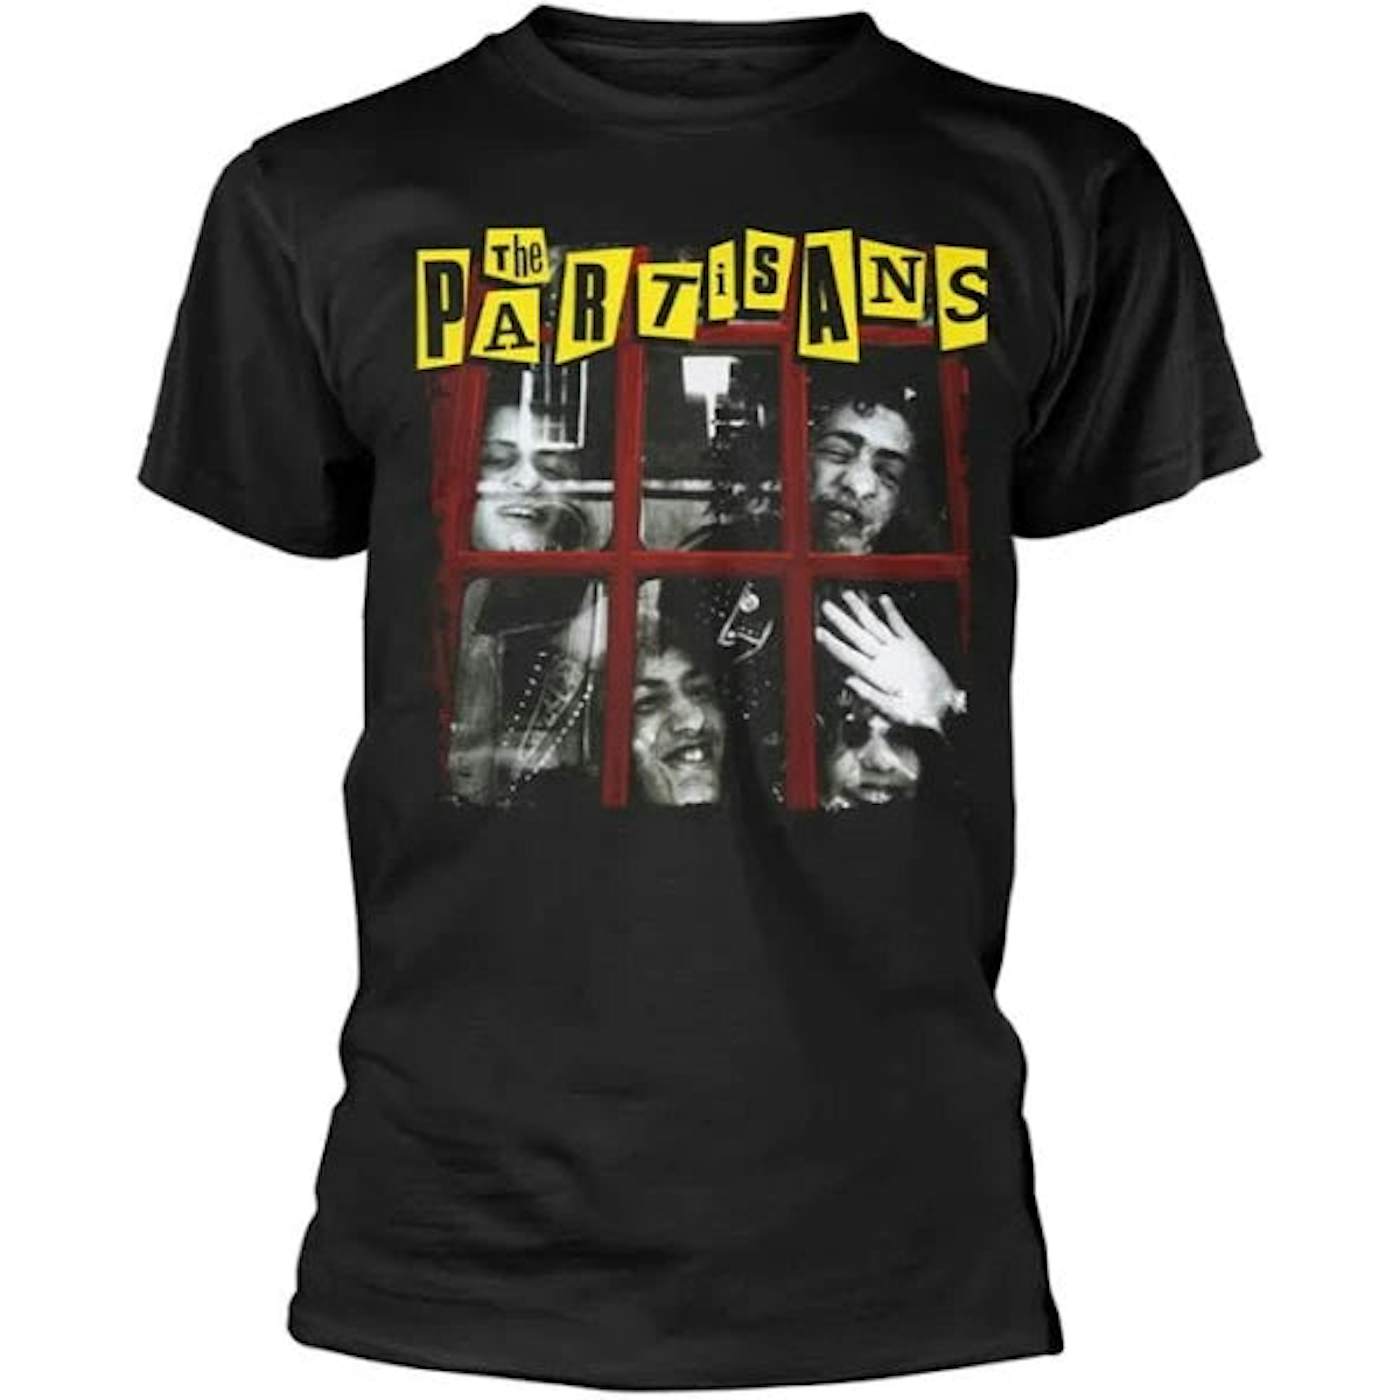 The Partisans T Shirt - The Partisans